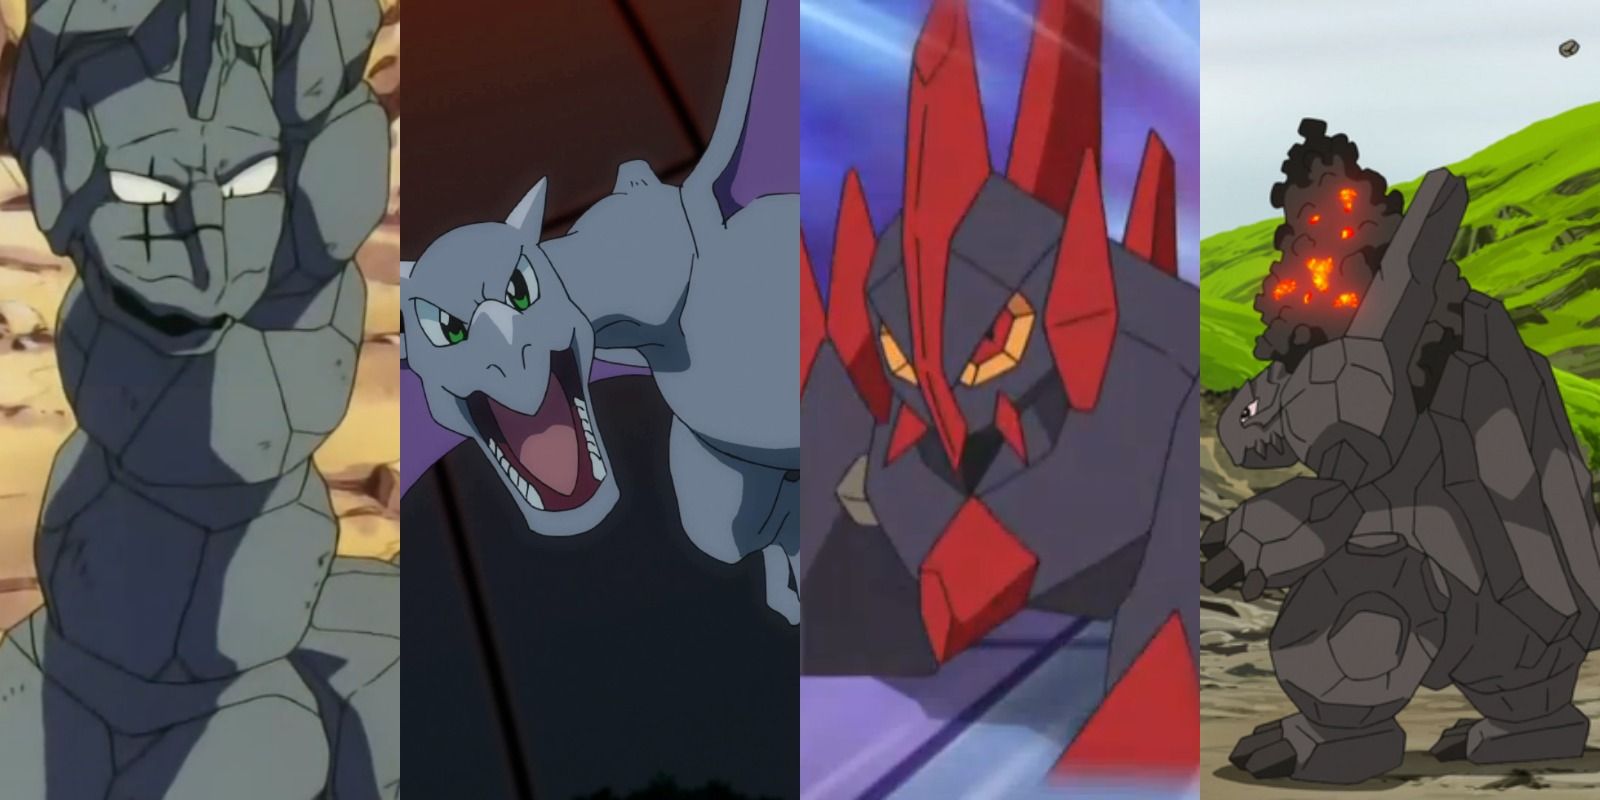 4 Rock-type Pokémon: Onix, Aerodactyl, Gigalith, and Coalossal